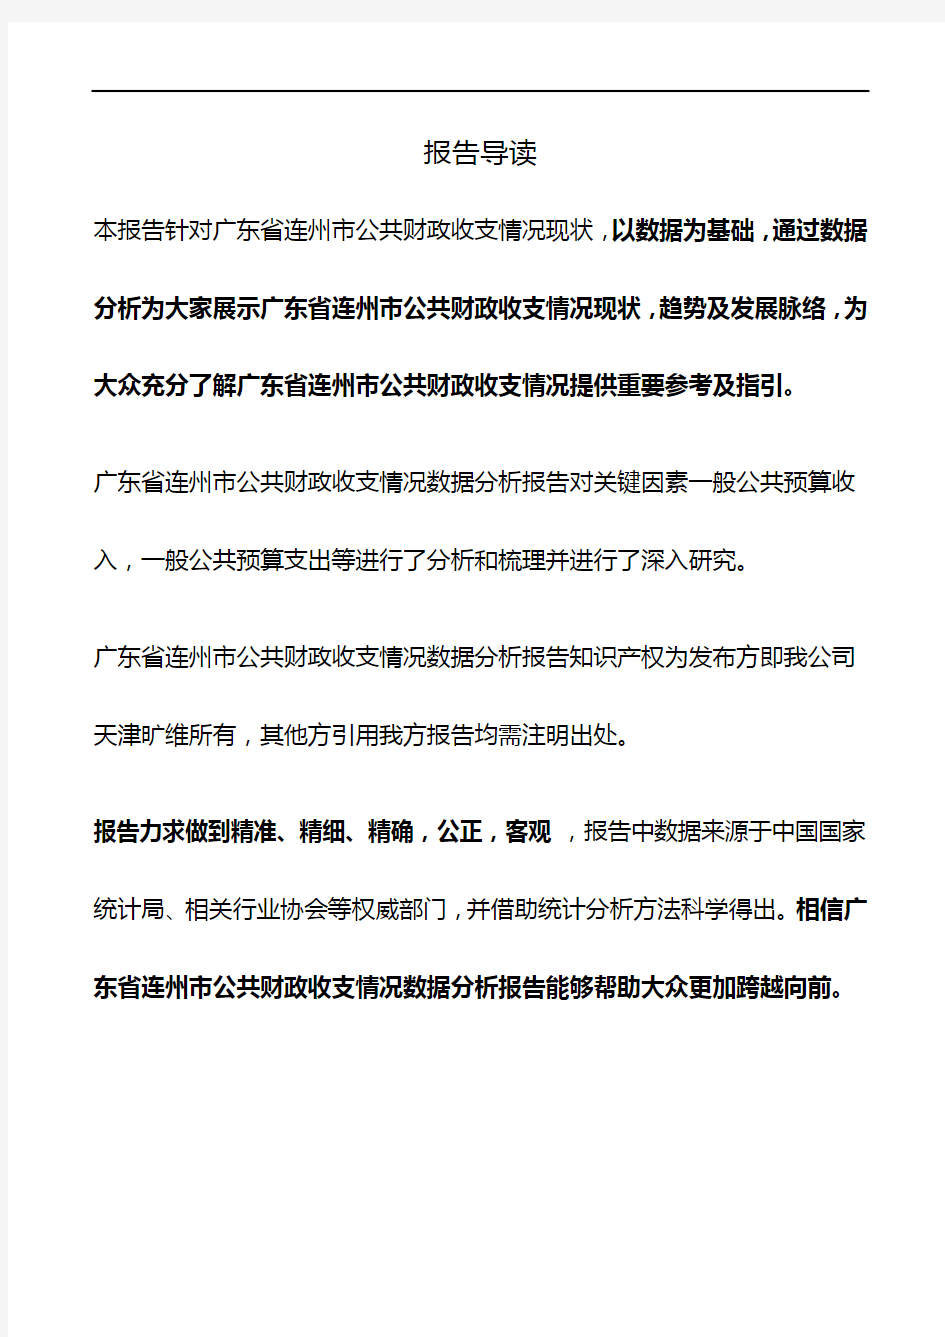 广东省连州市公共财政收支情况3年数据分析报告2019版